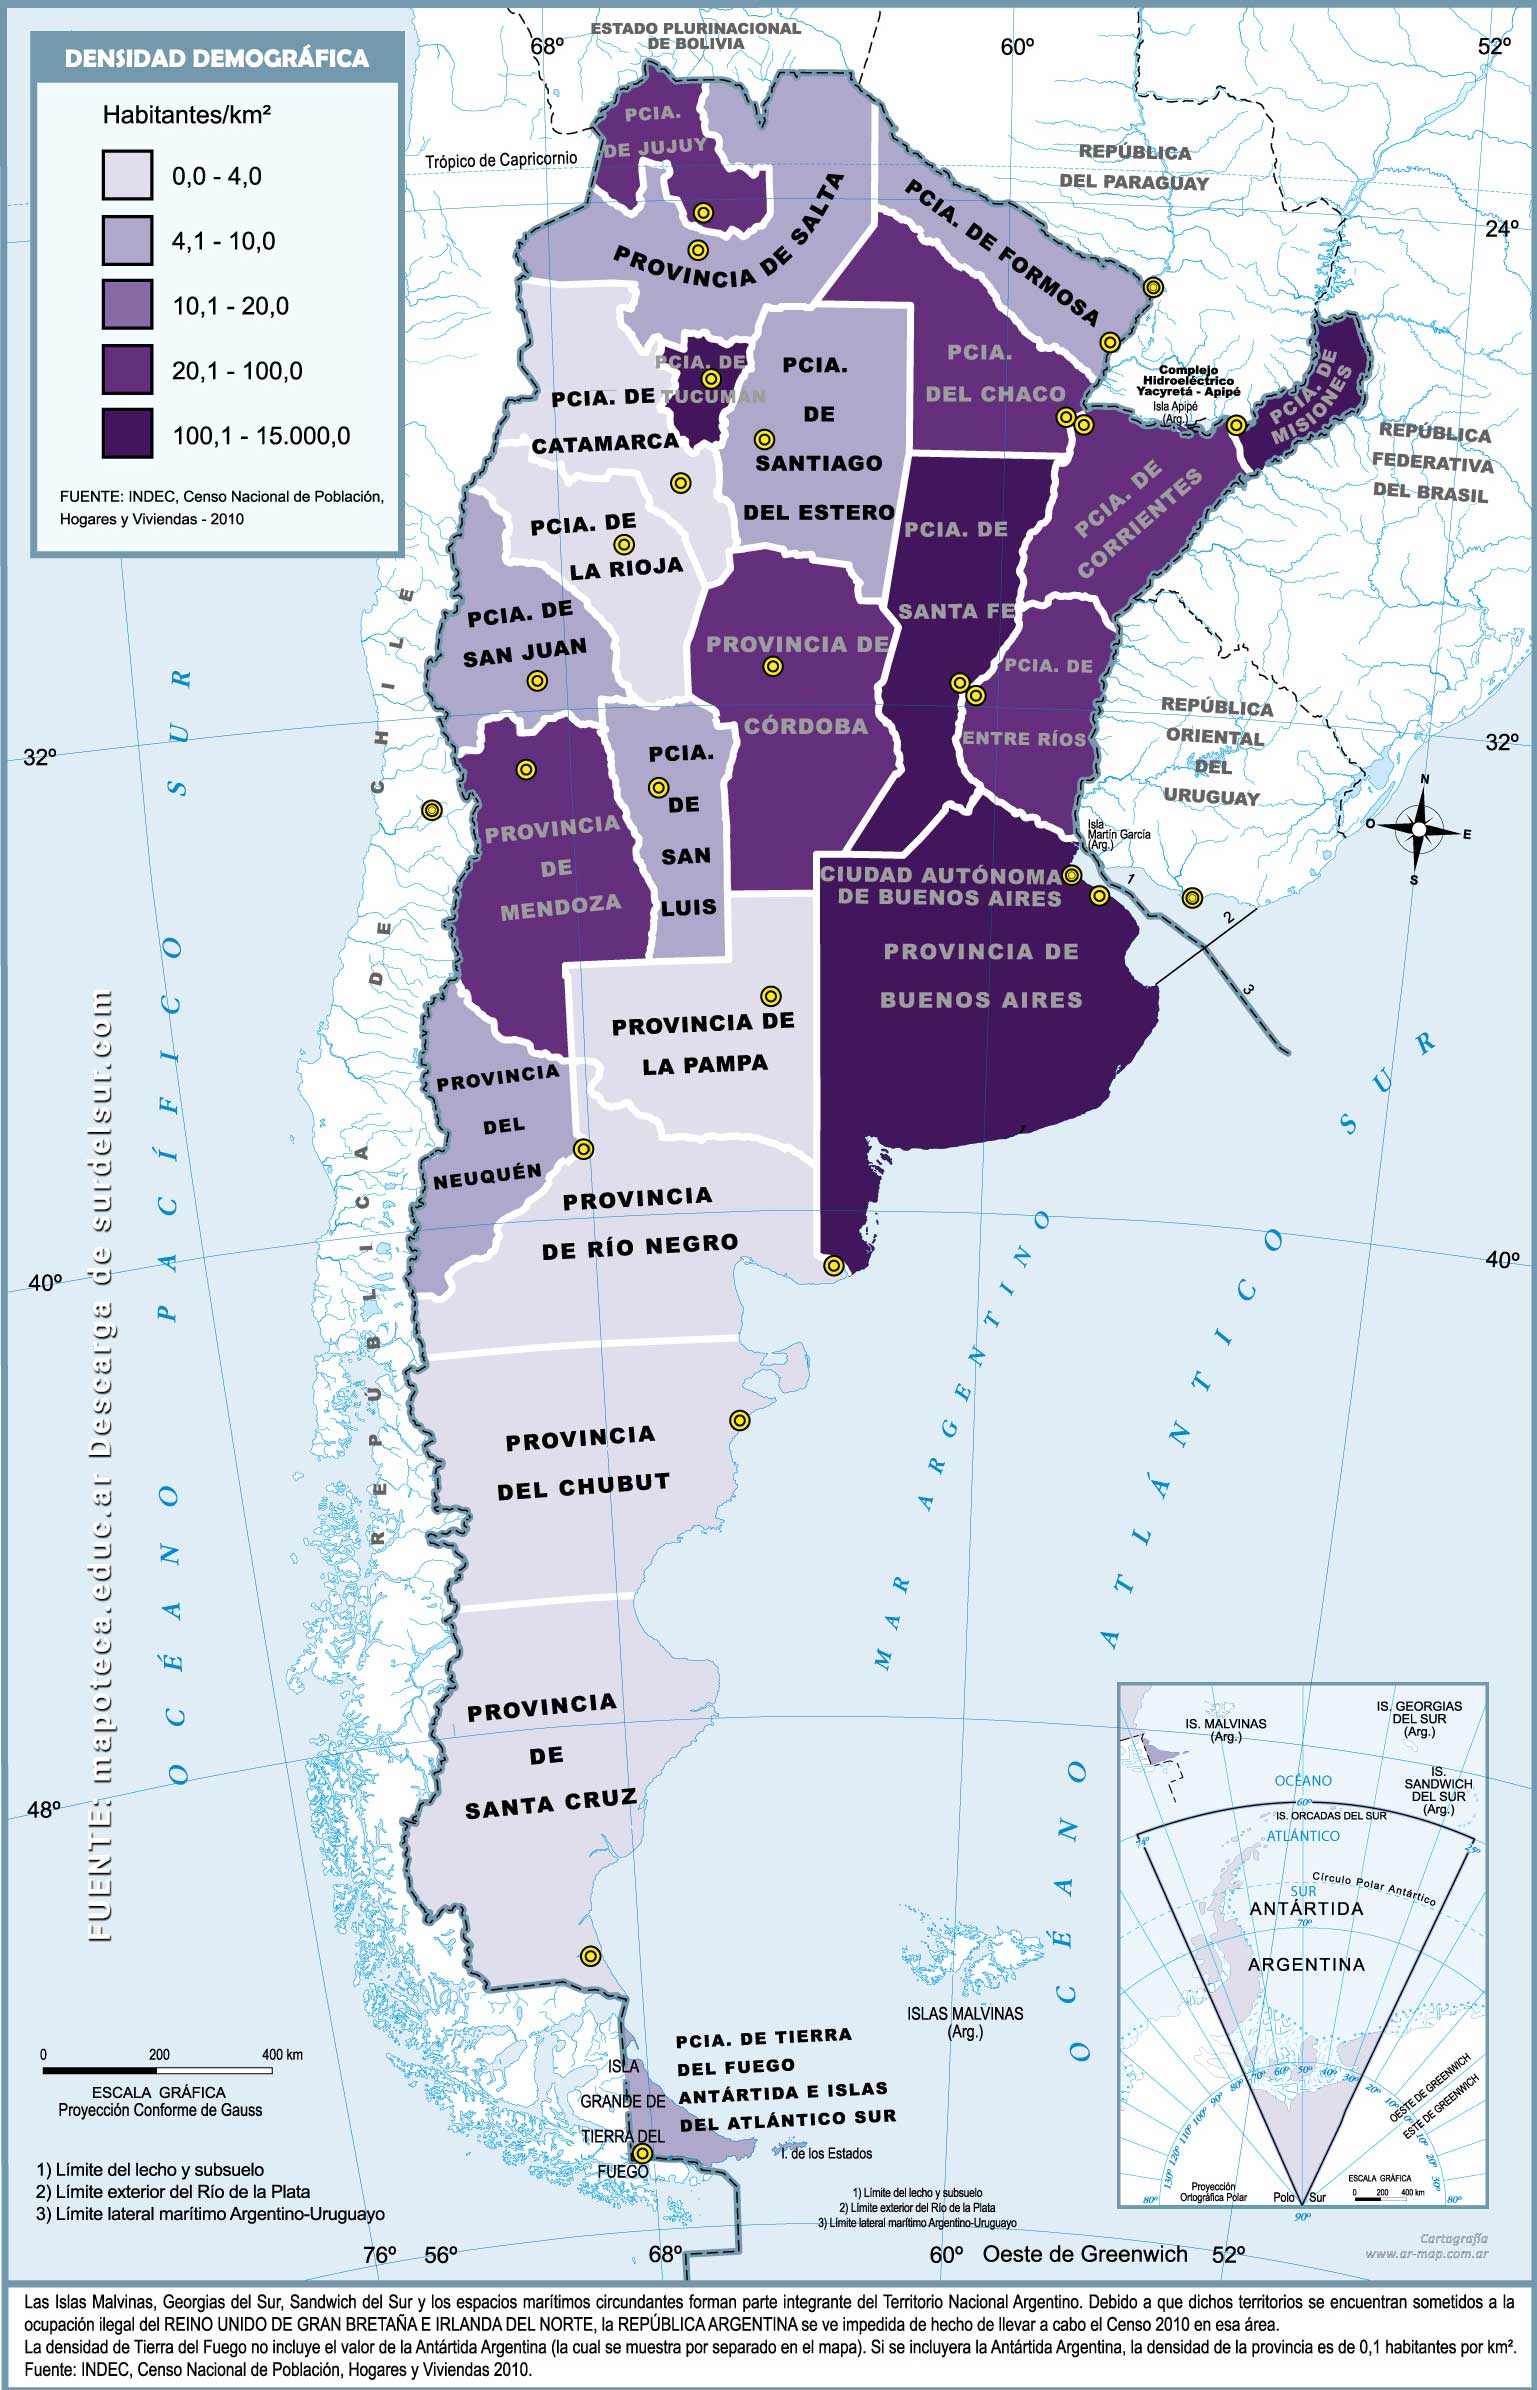 Mapa demográfico de Argentina.